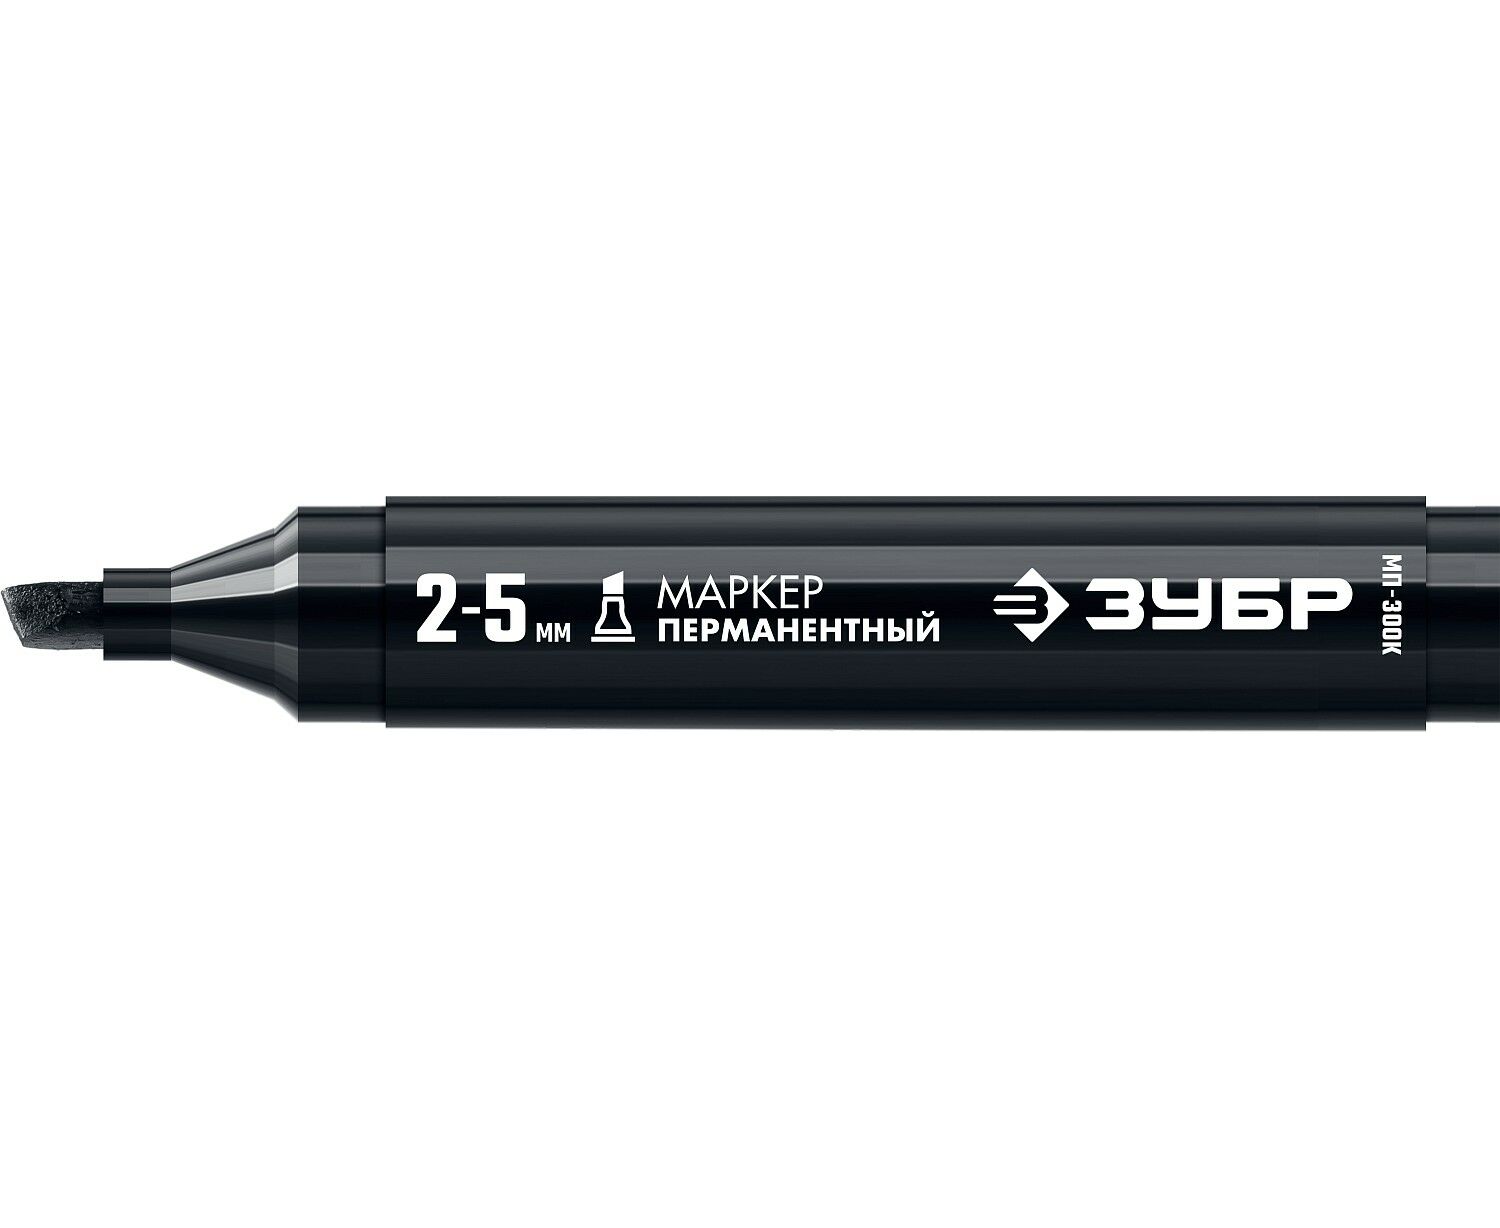 Маркер строительный ЗУБР МП-300К черный, 2-5 мм, клиновидный, перманентный маркер строительный 888 перманентный на масляной основе 3007021